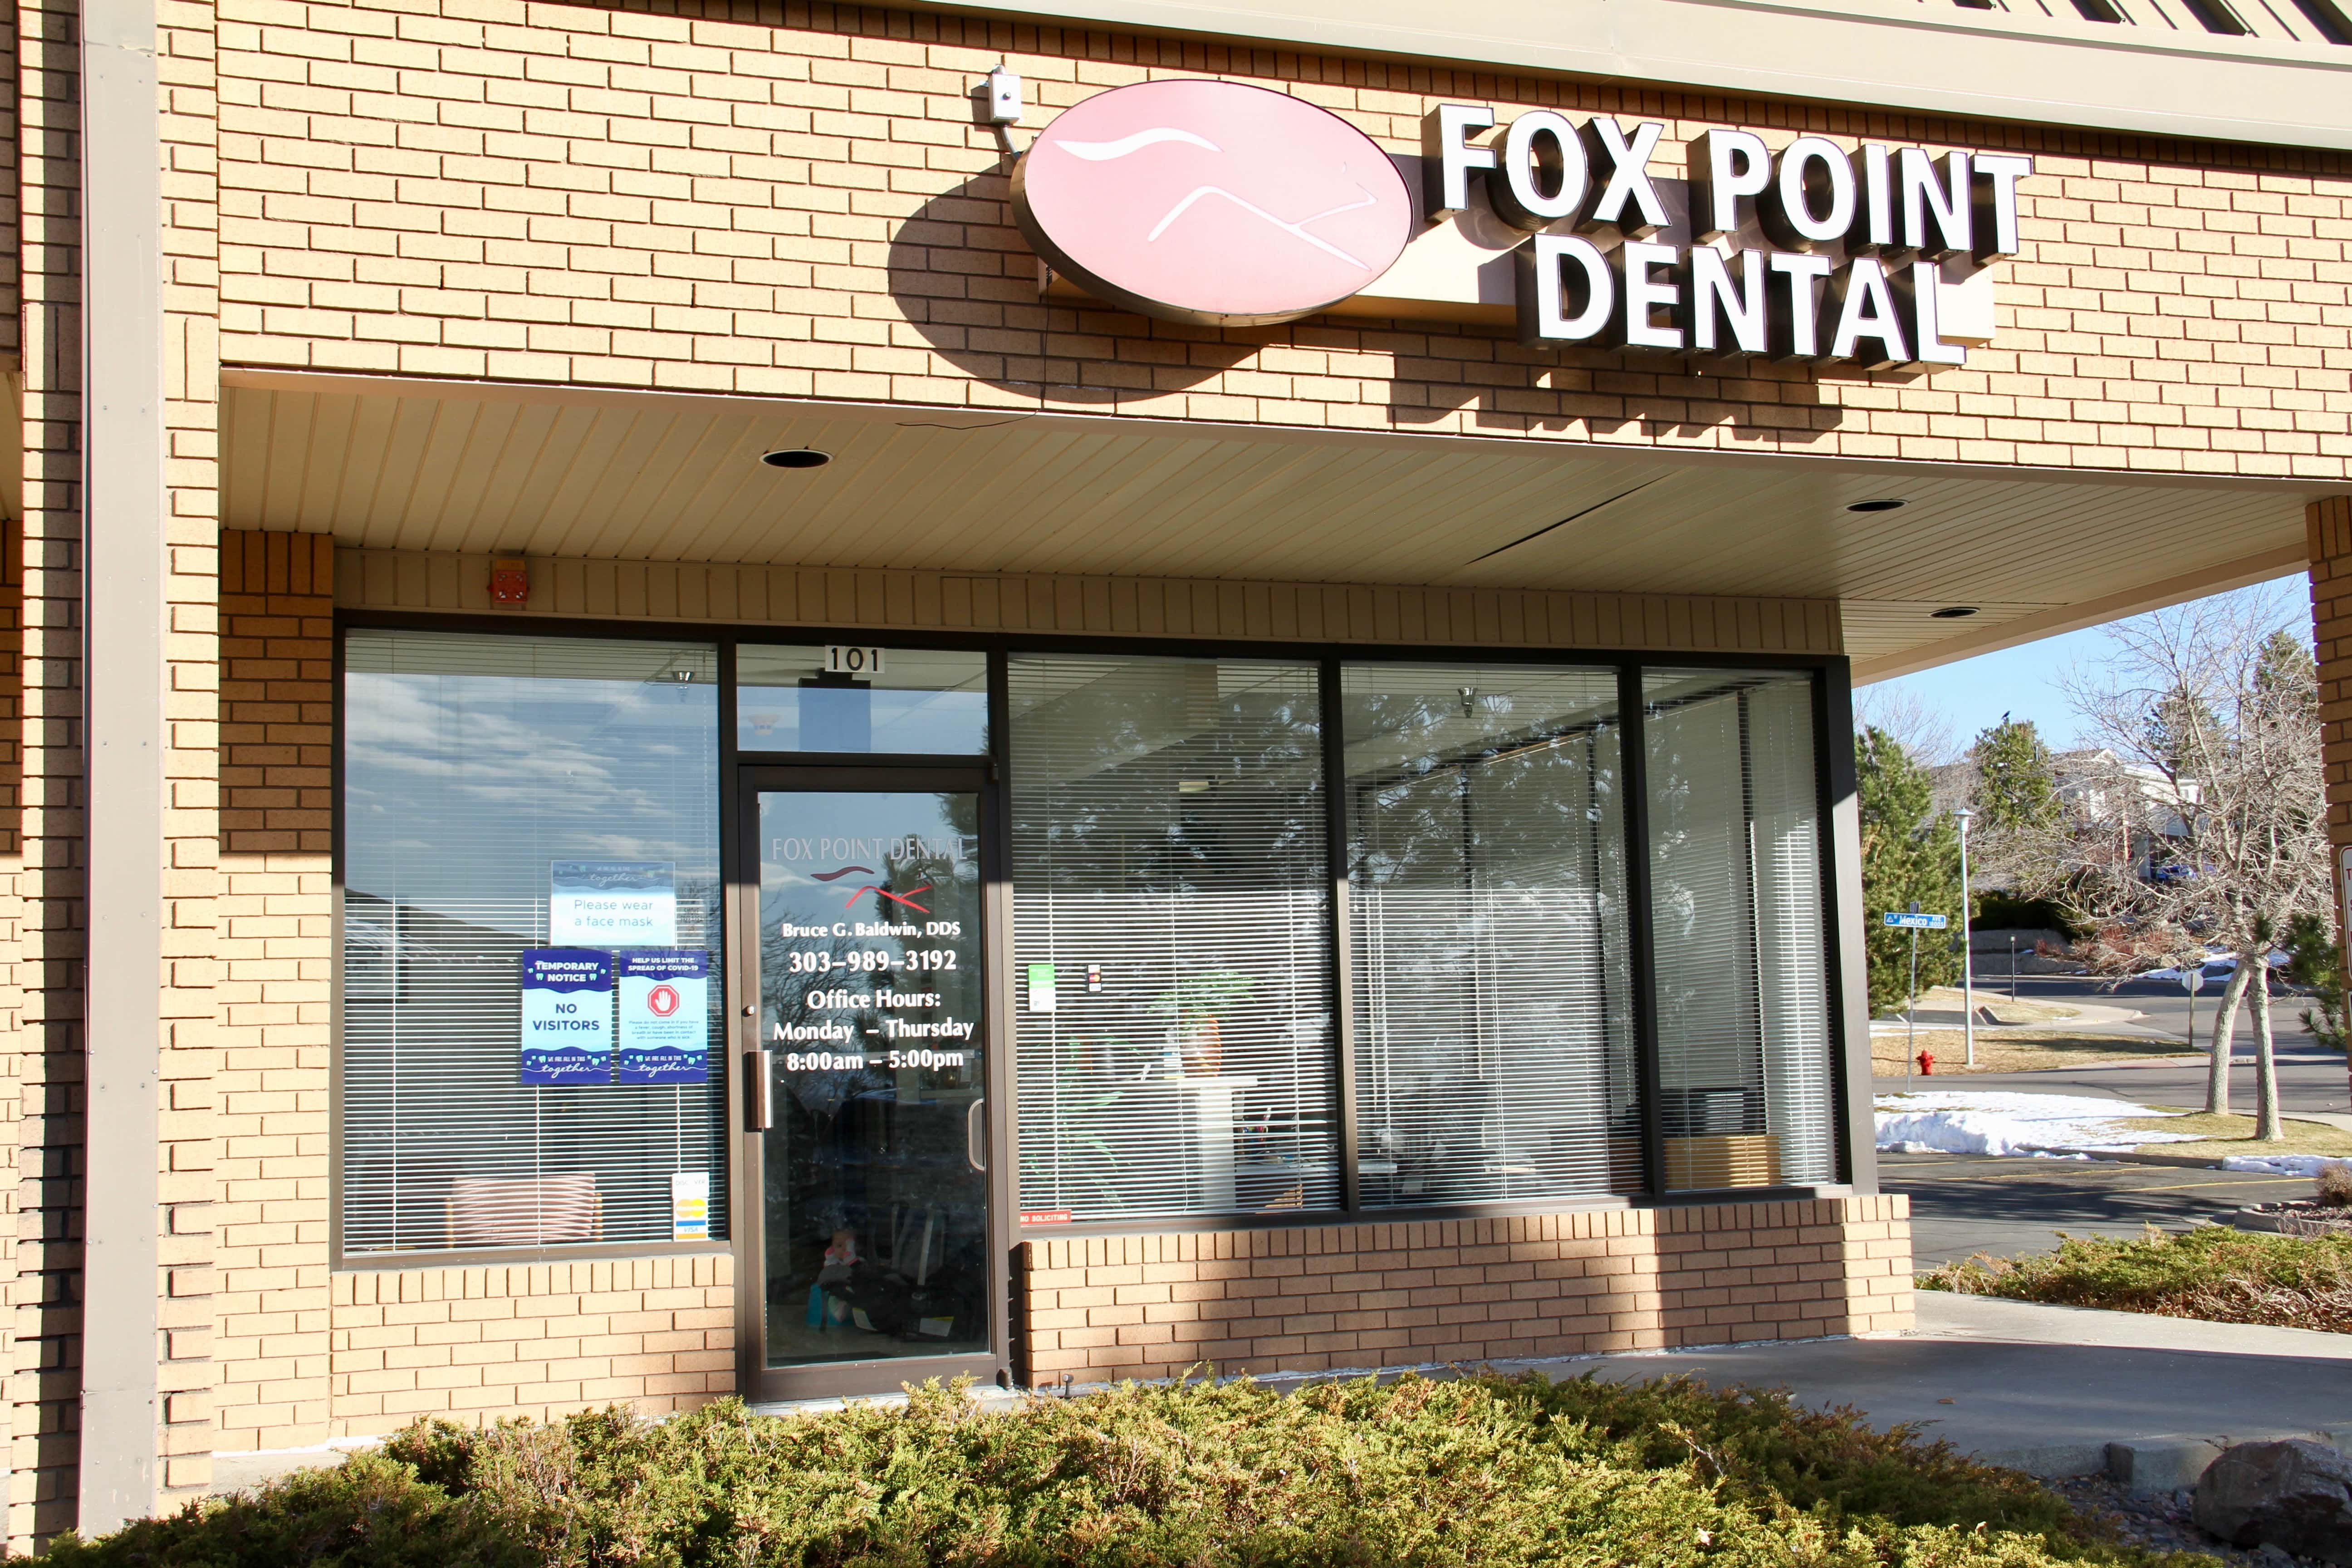 Fox Point Dental - Lakewood, CO, US, veneers